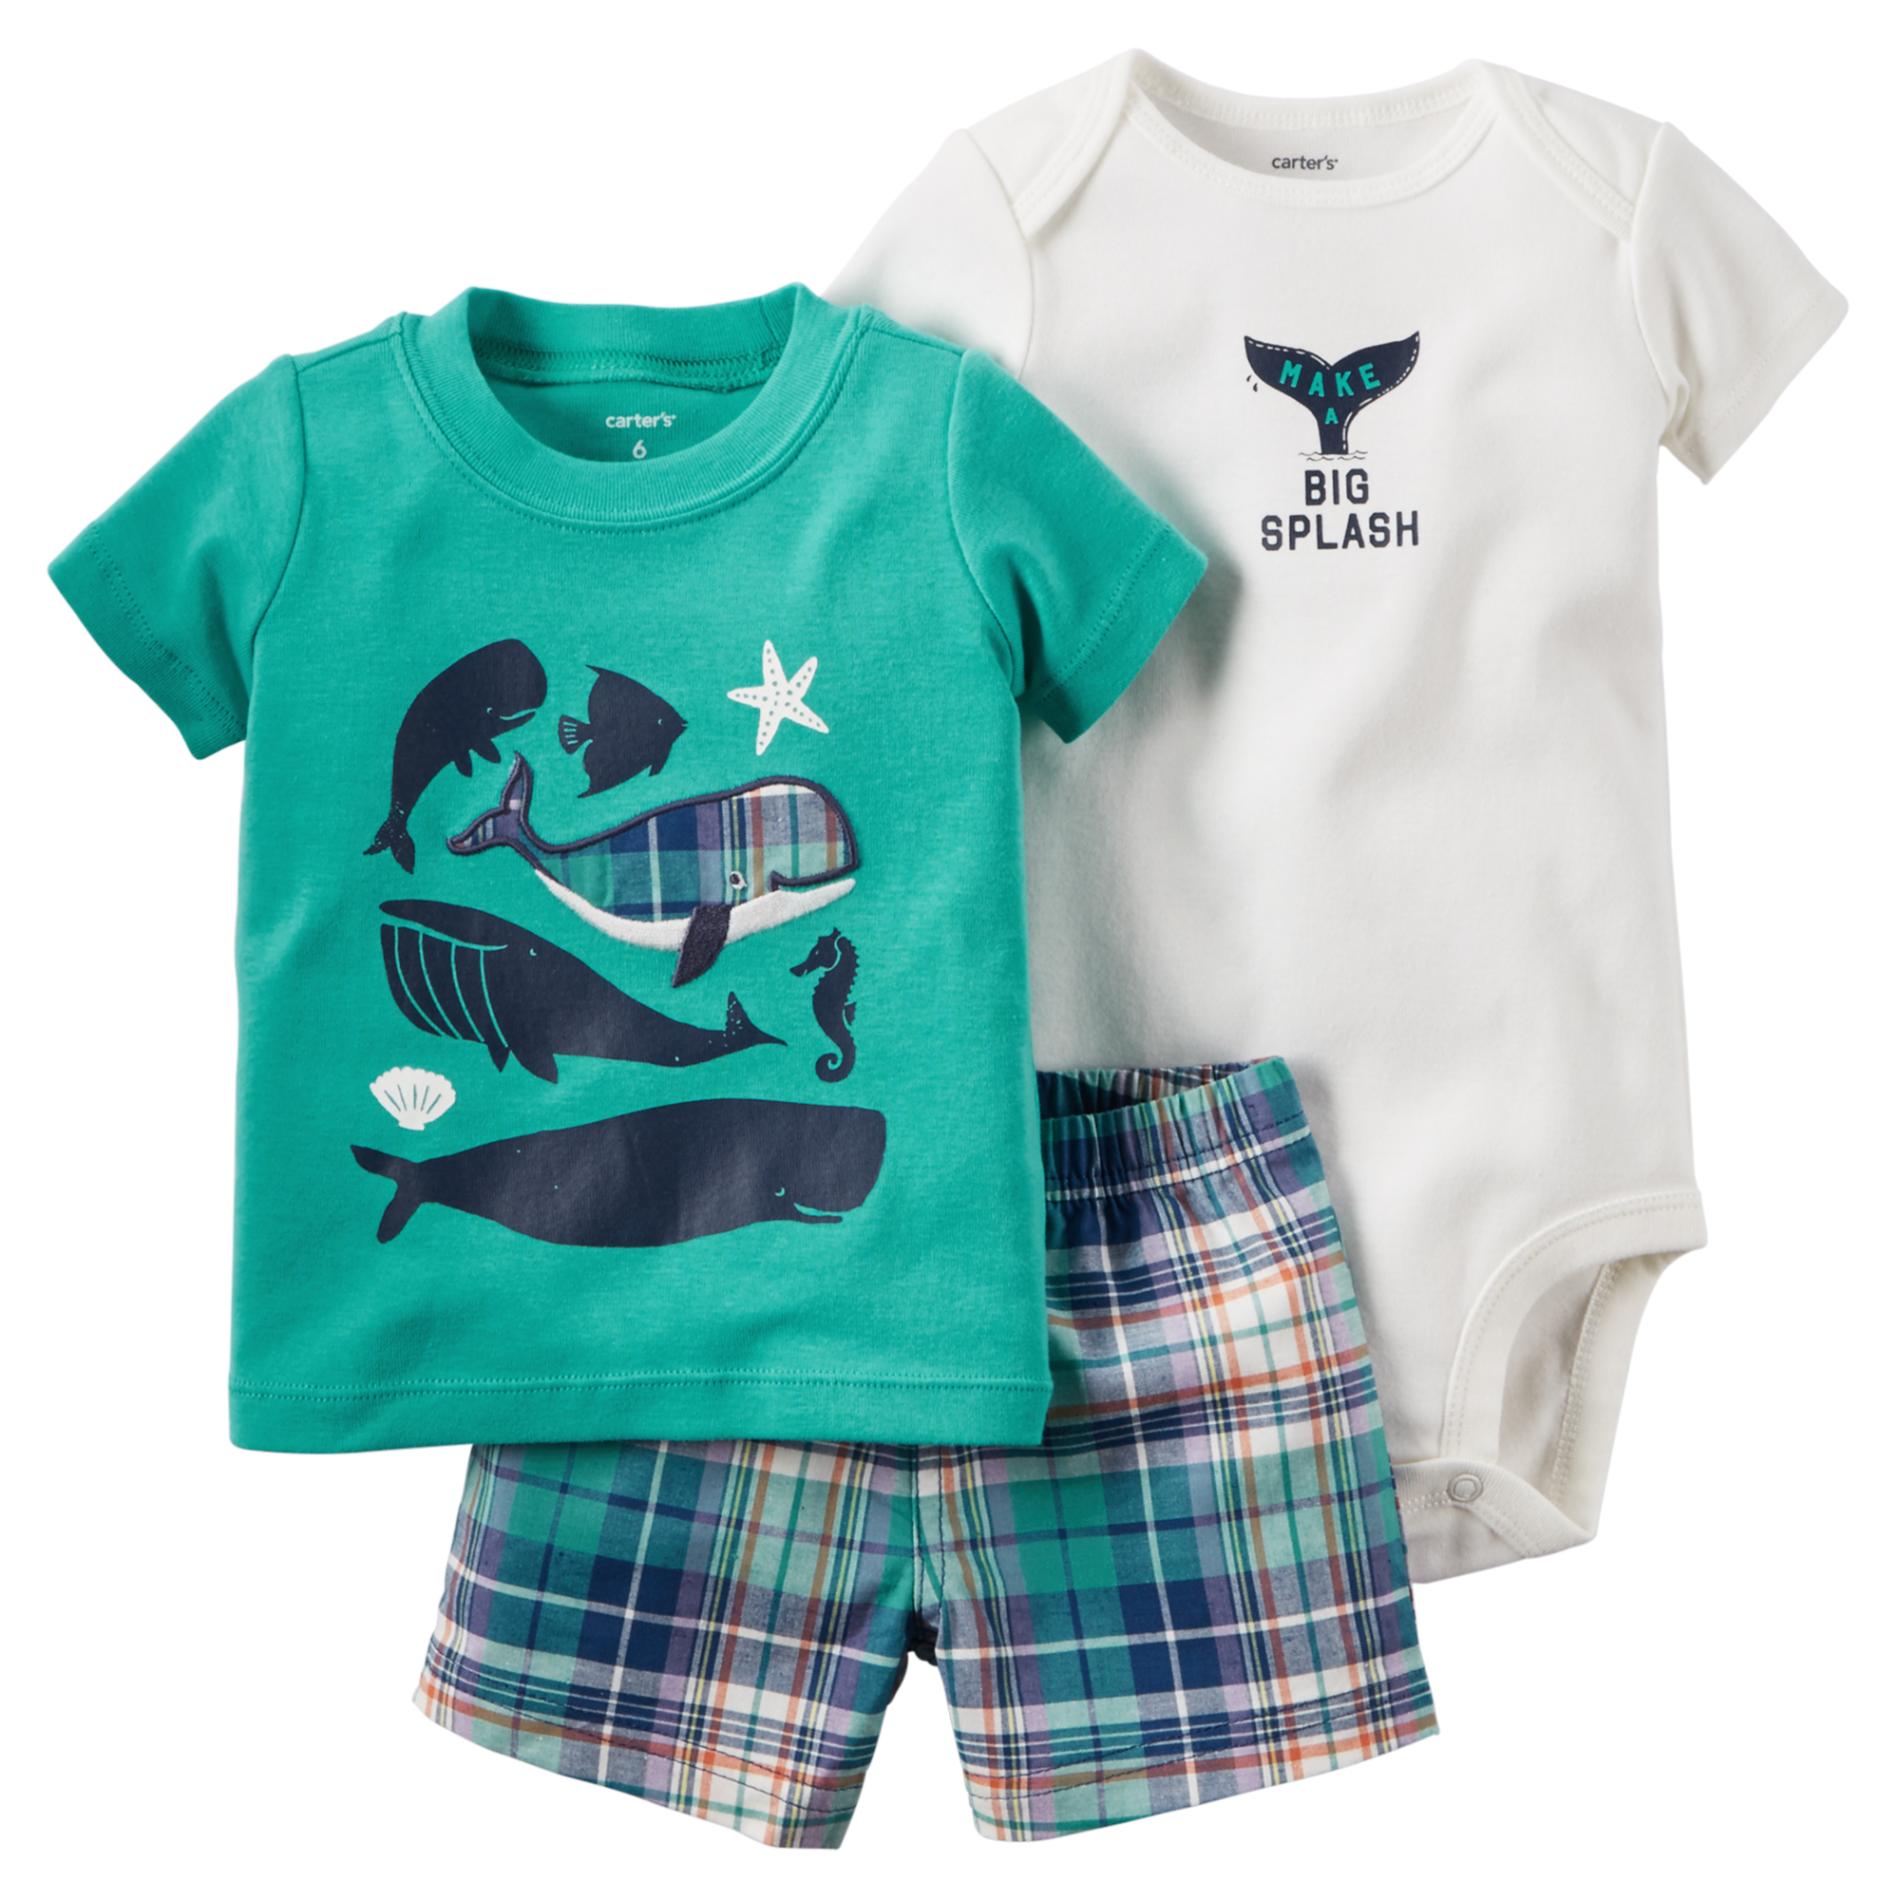 Carter's Newborn & Infant Boy's T-Shirt, Bodysuit & Shorts - Whales